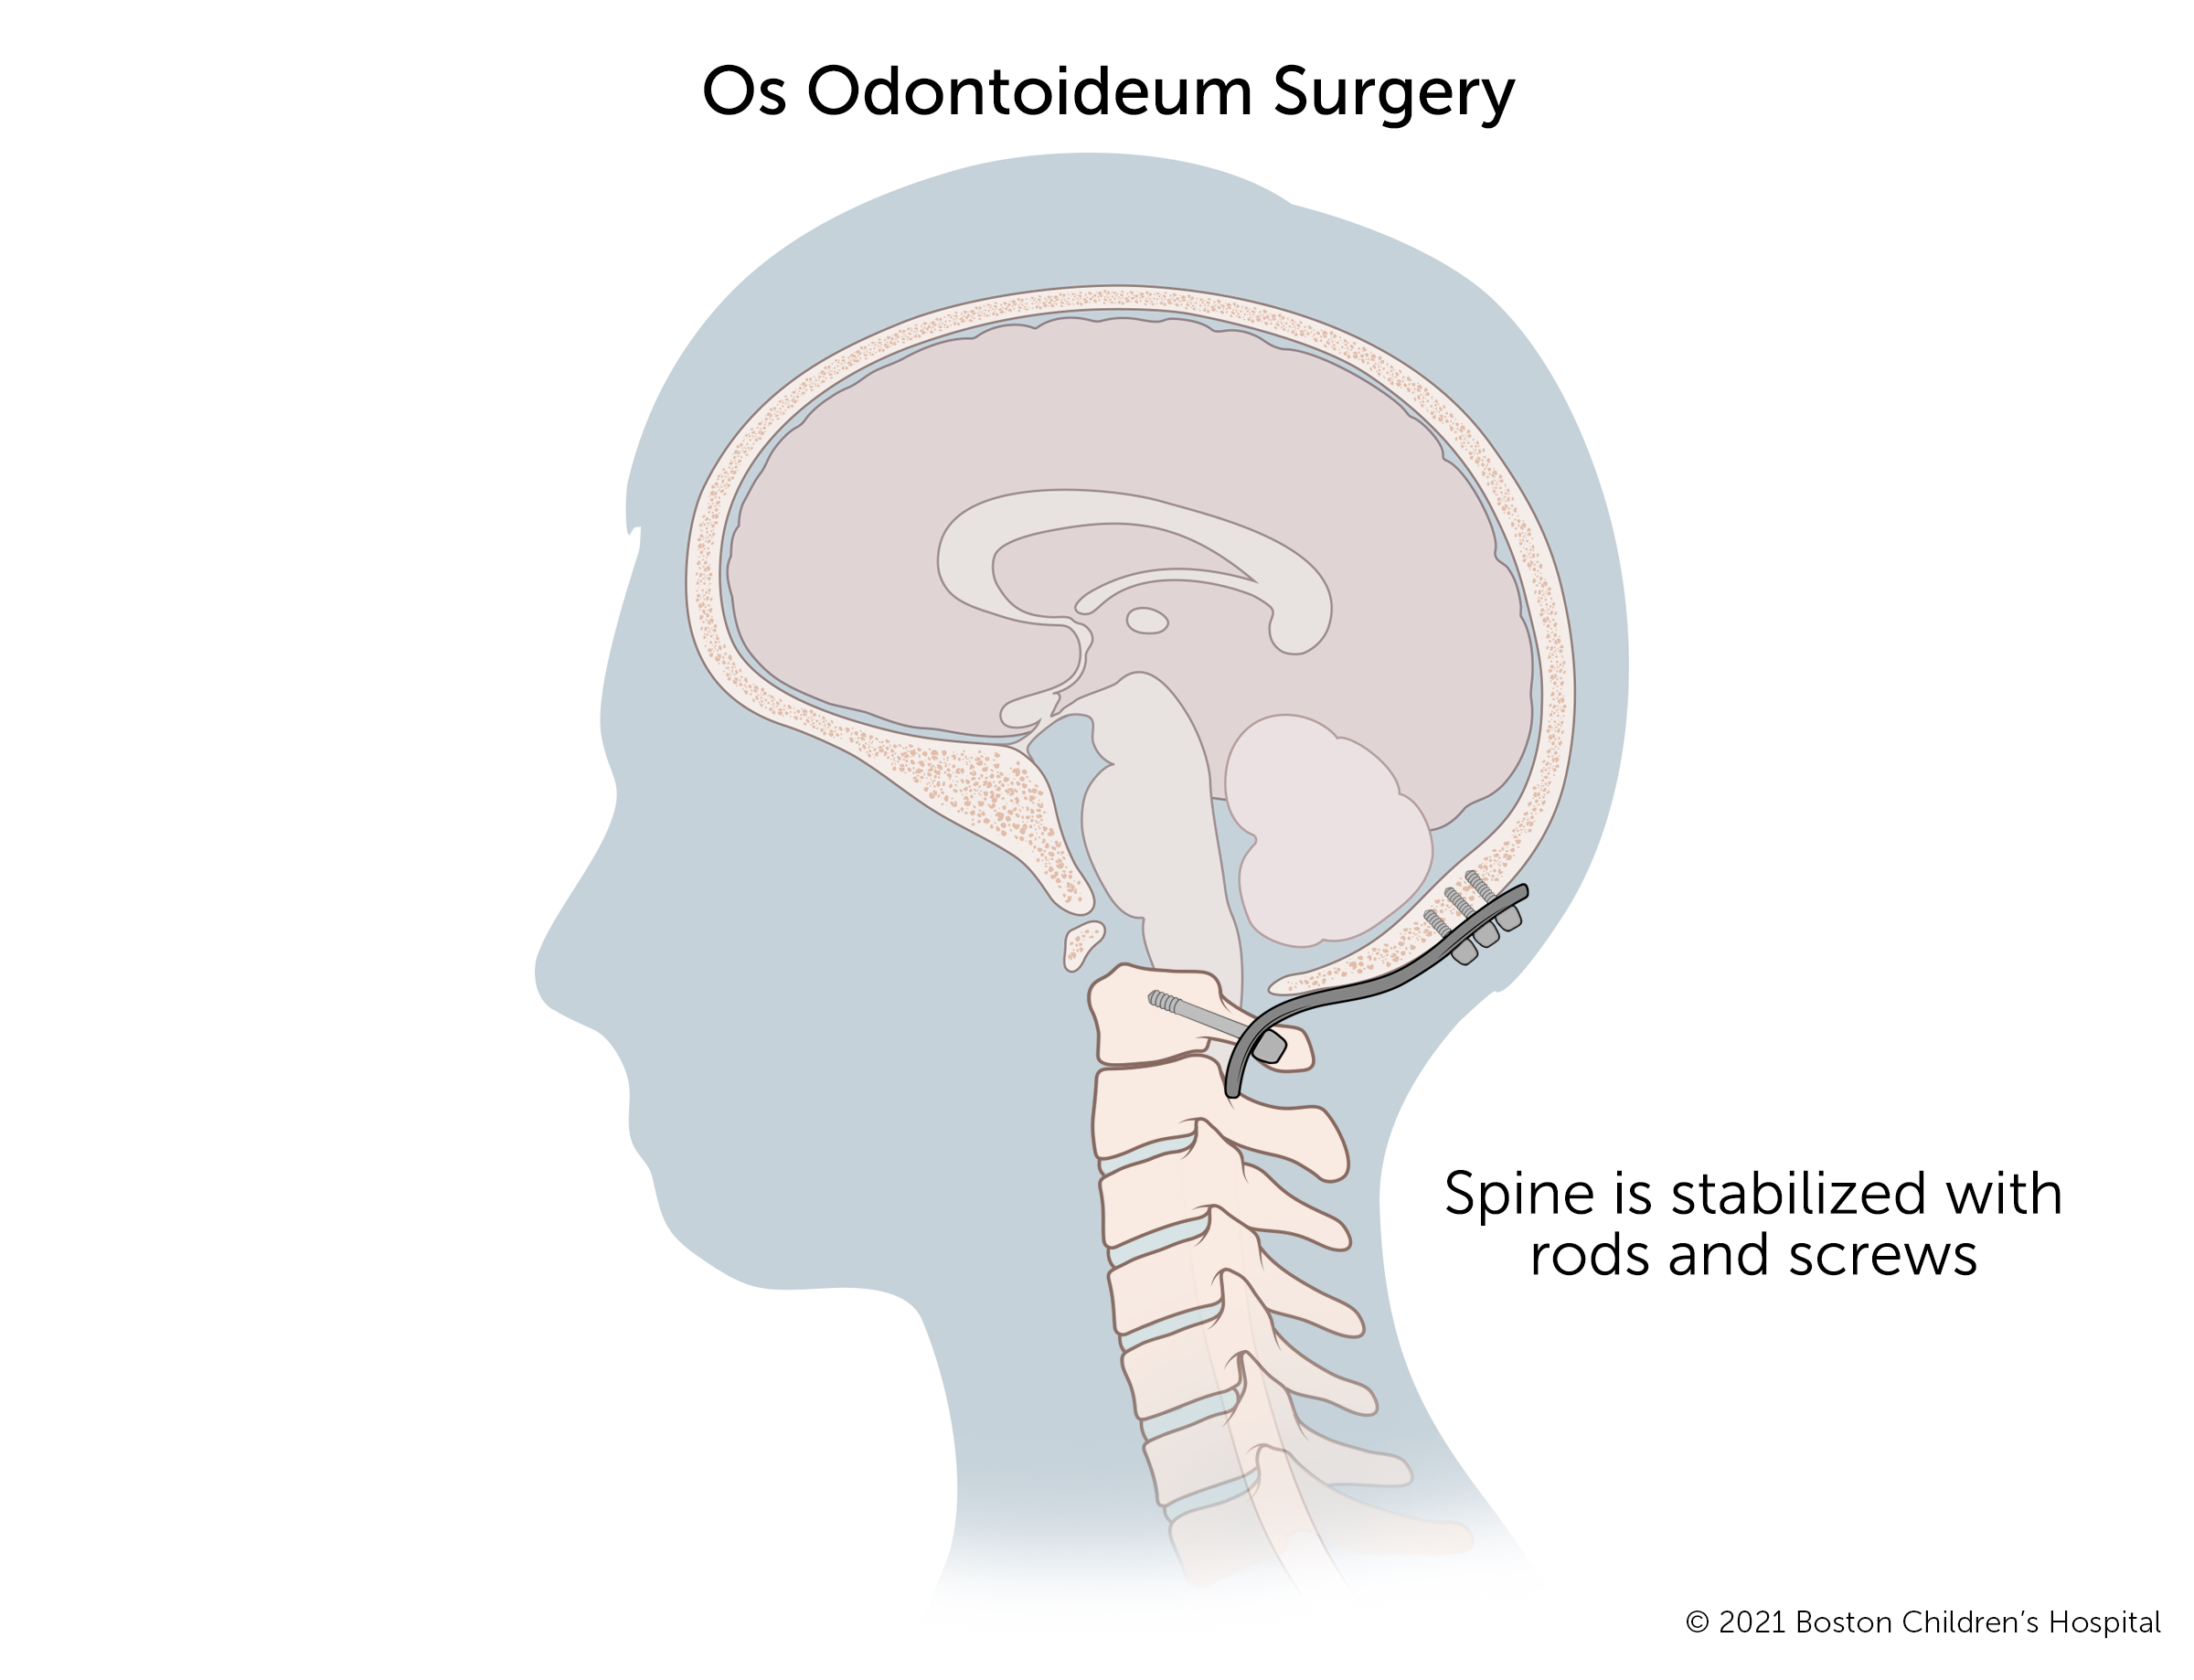 齿状突手术包括调整颈椎椎体和减压脊髓。然后用杆和螺钉固定脊柱。